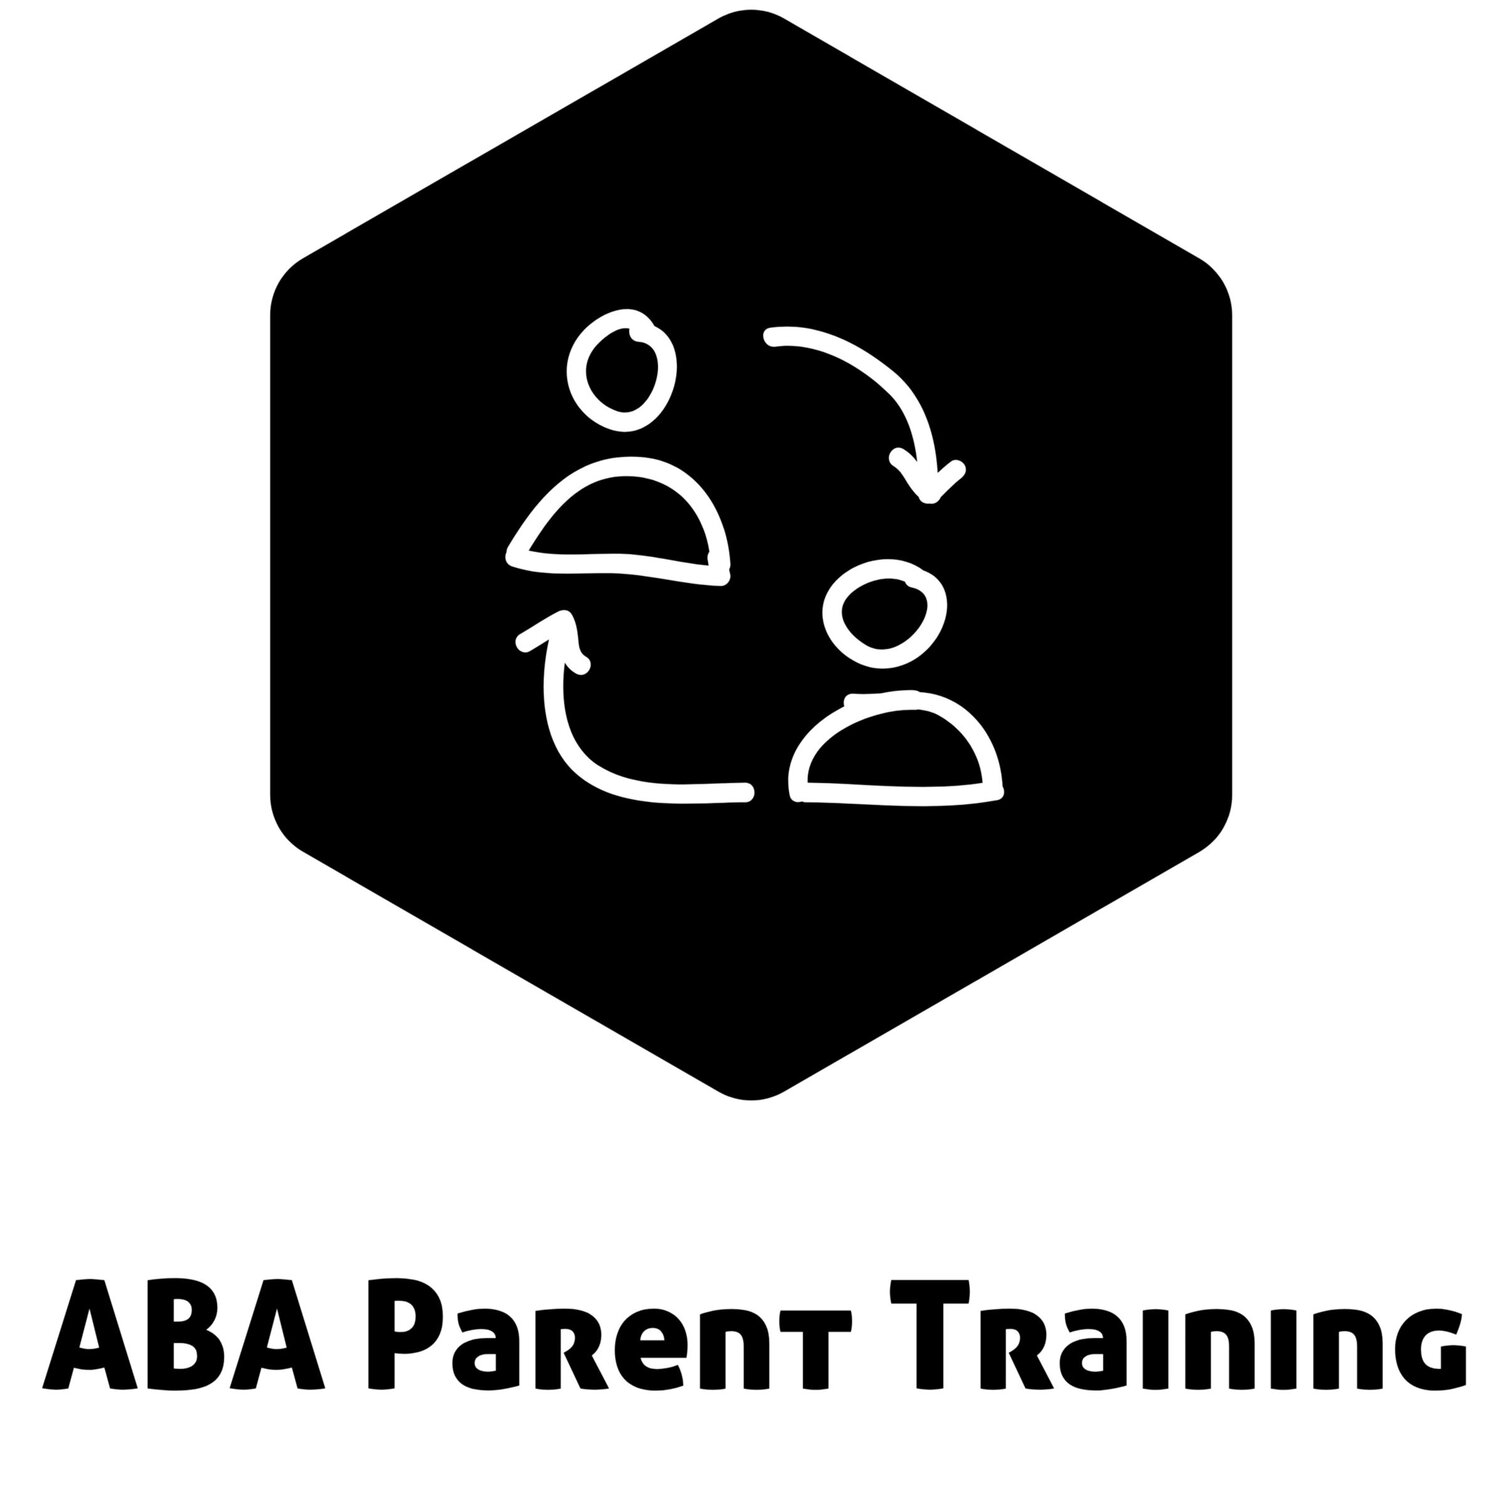 ABA Parent Training: Curriculum, CEUs, Support, & More